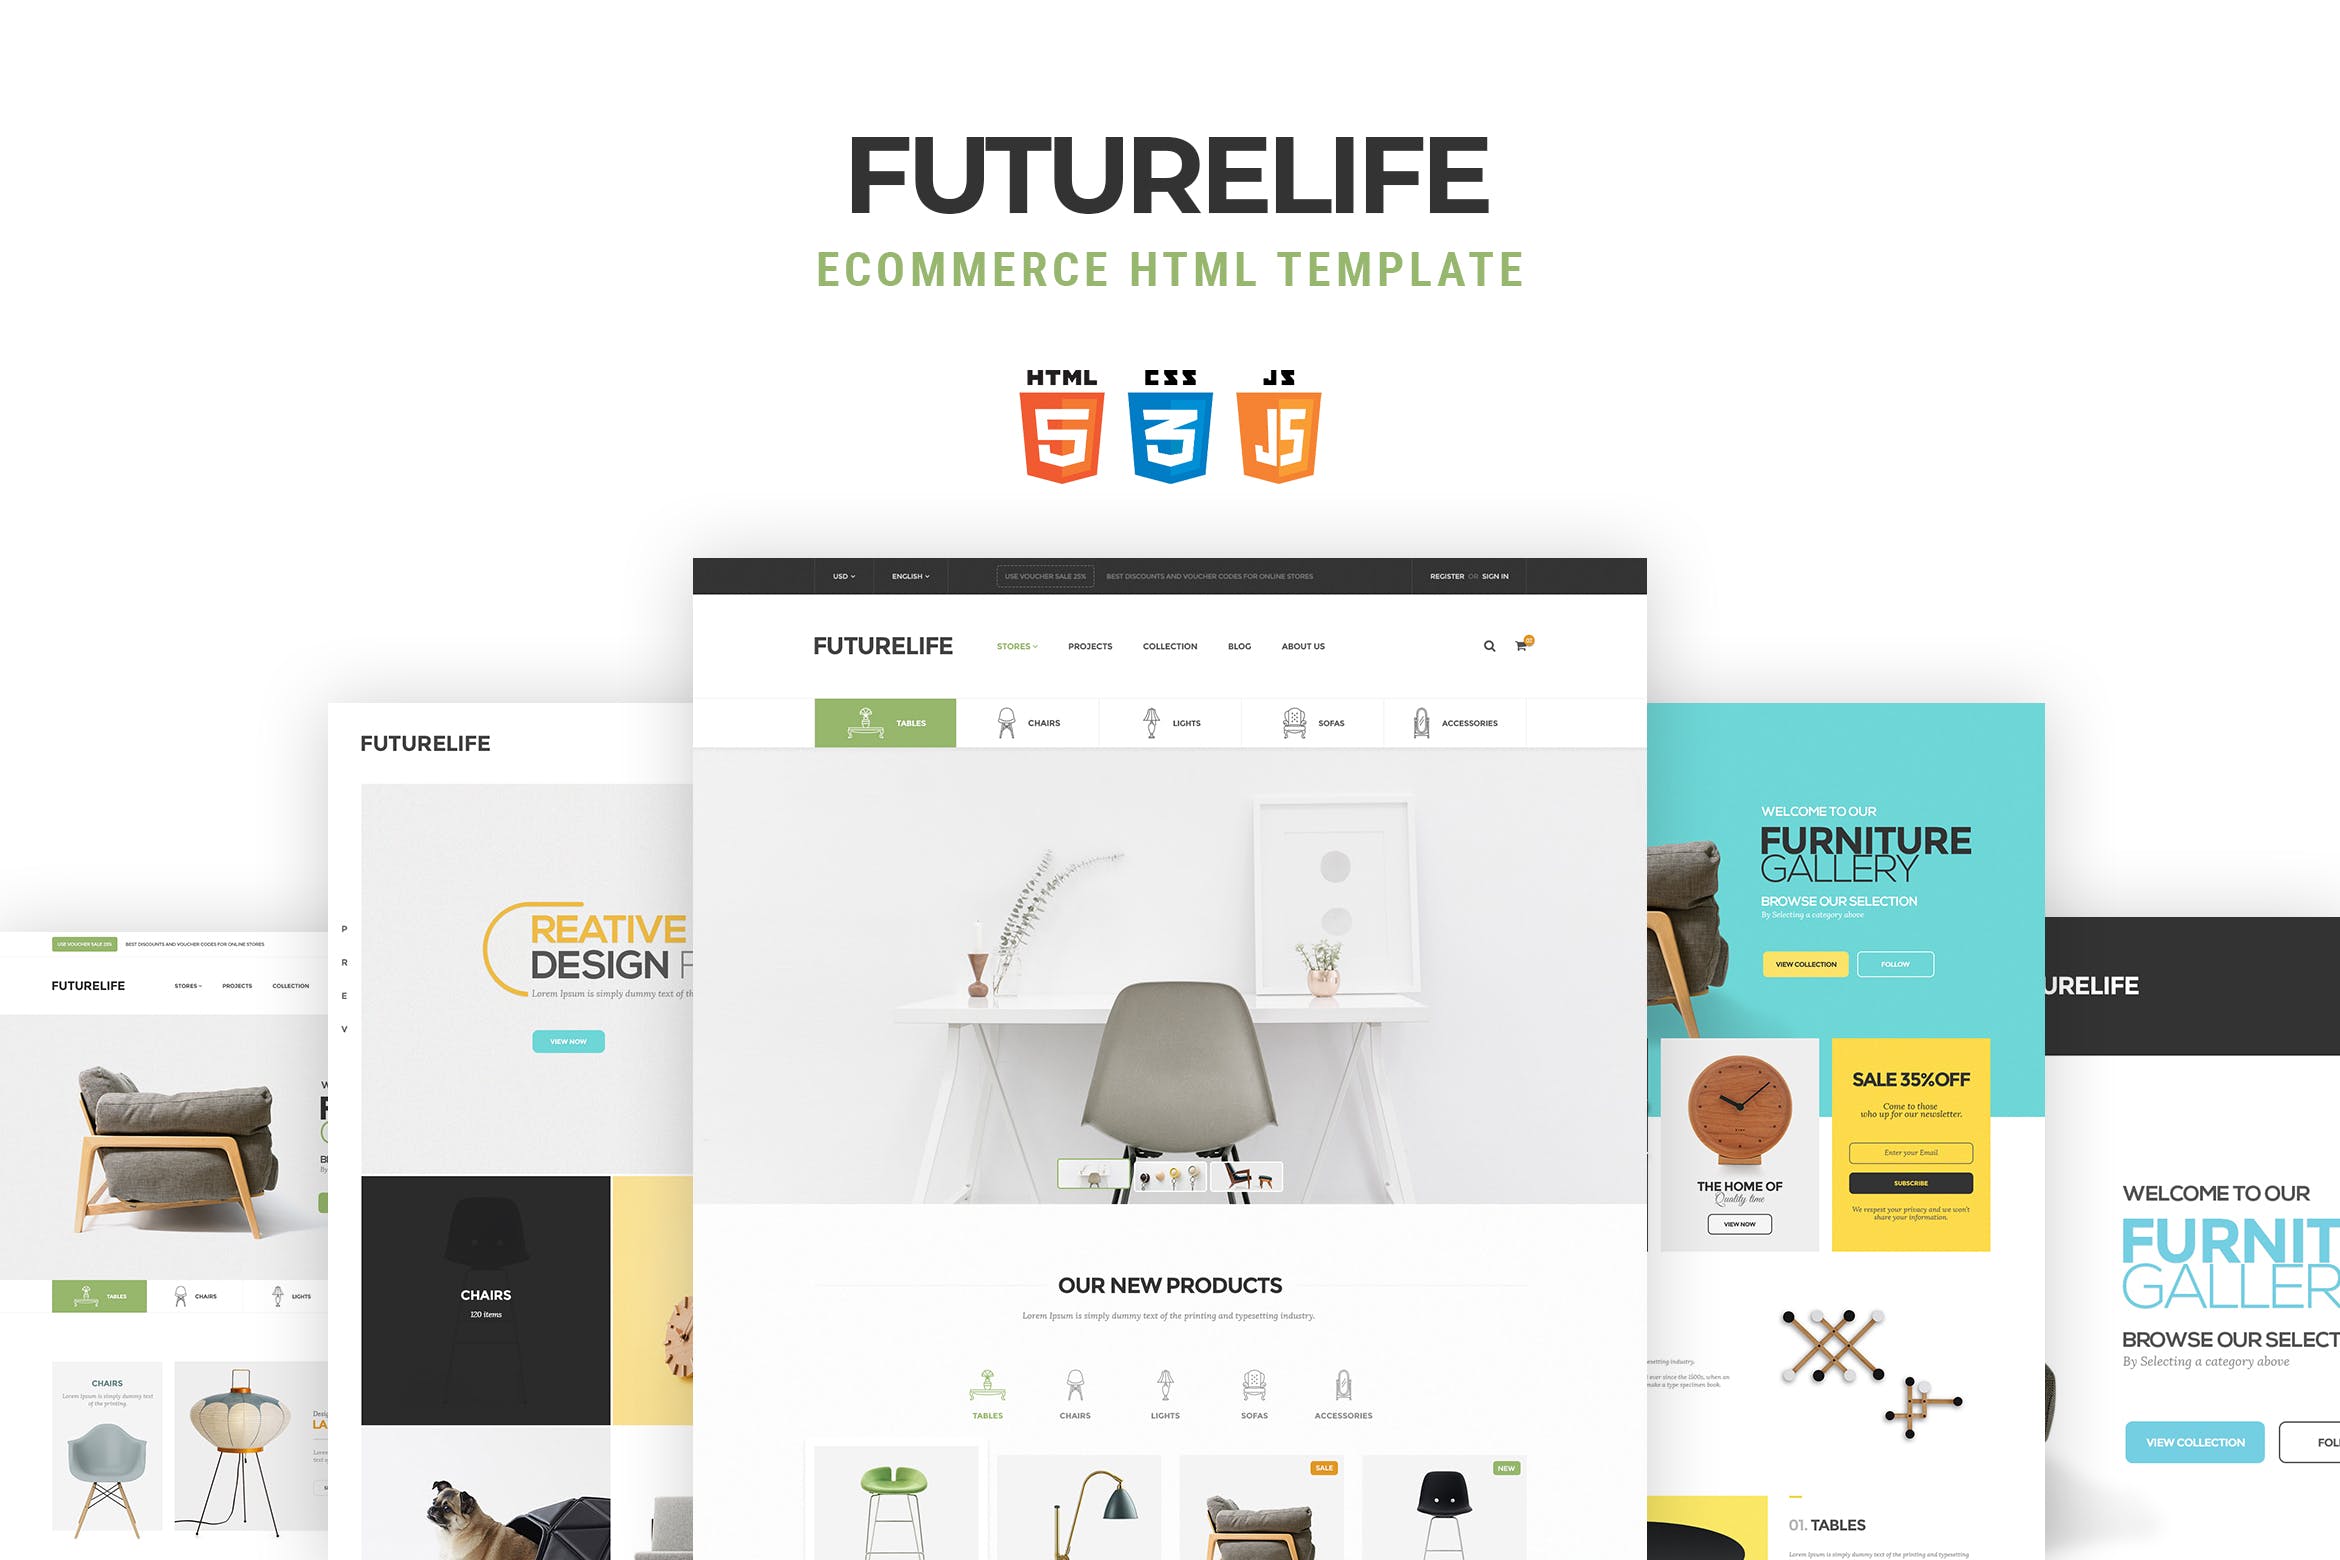 未来生活电子商务HTML网上商城模板素材库精选 Futurelife | eCommerce HTML Template插图